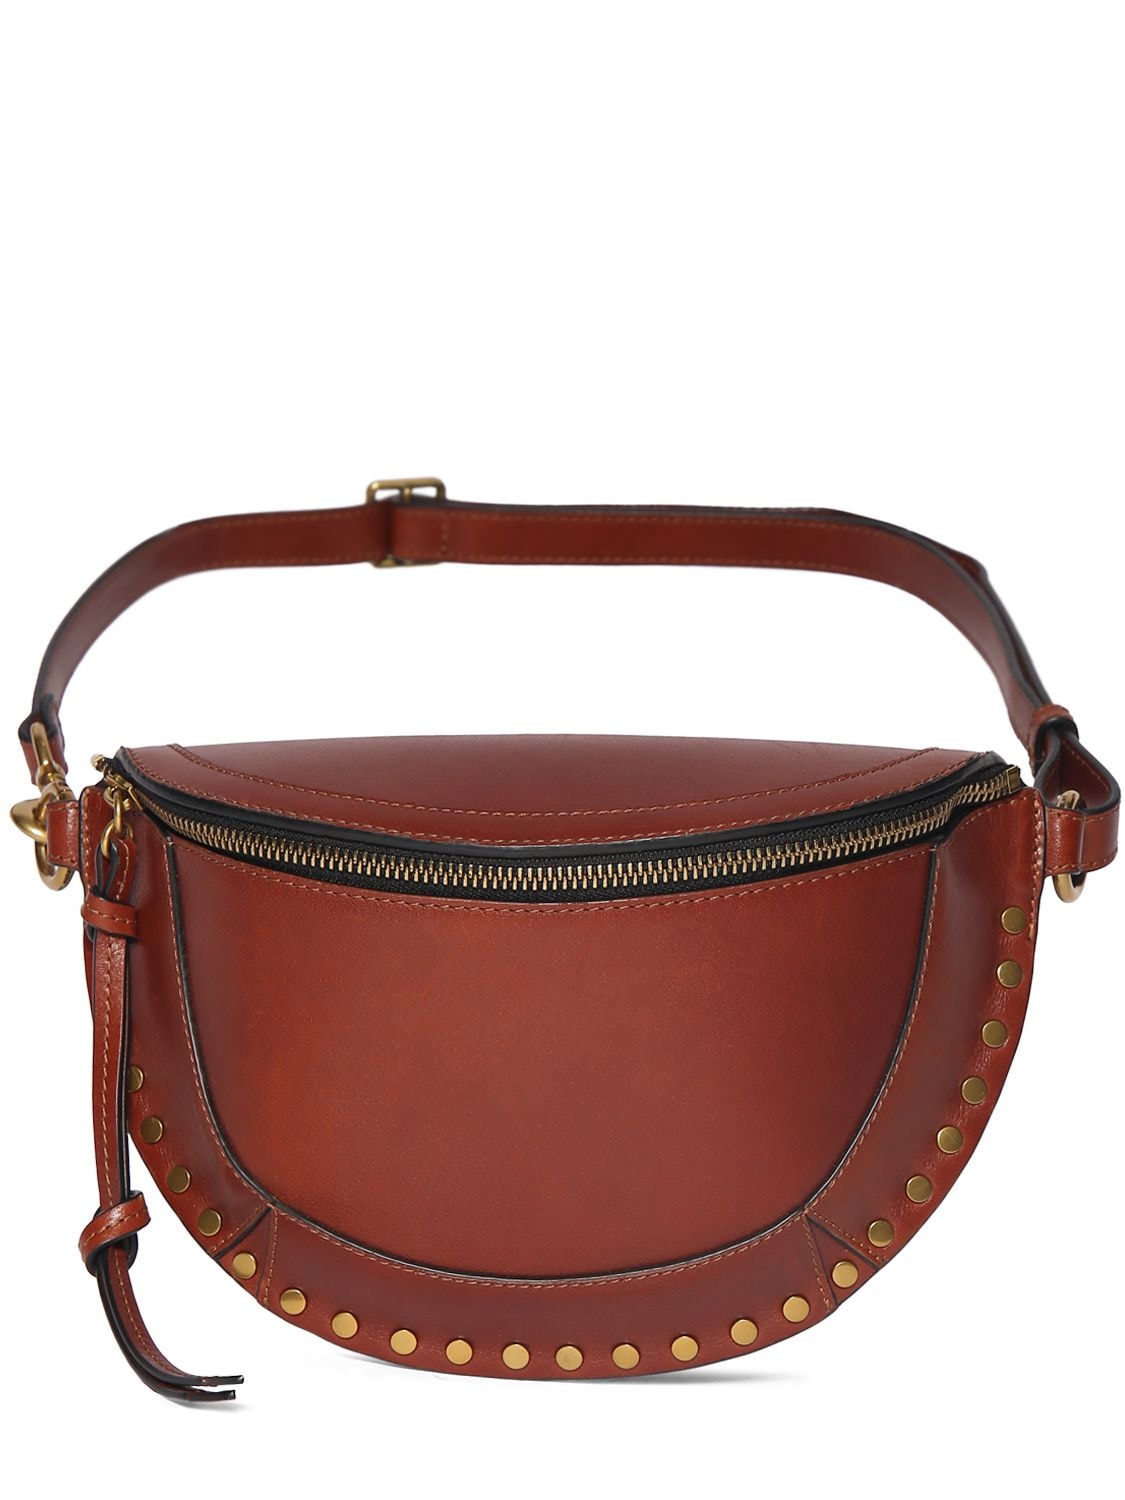 Image of Skano Studded Leather Shoulder Bag